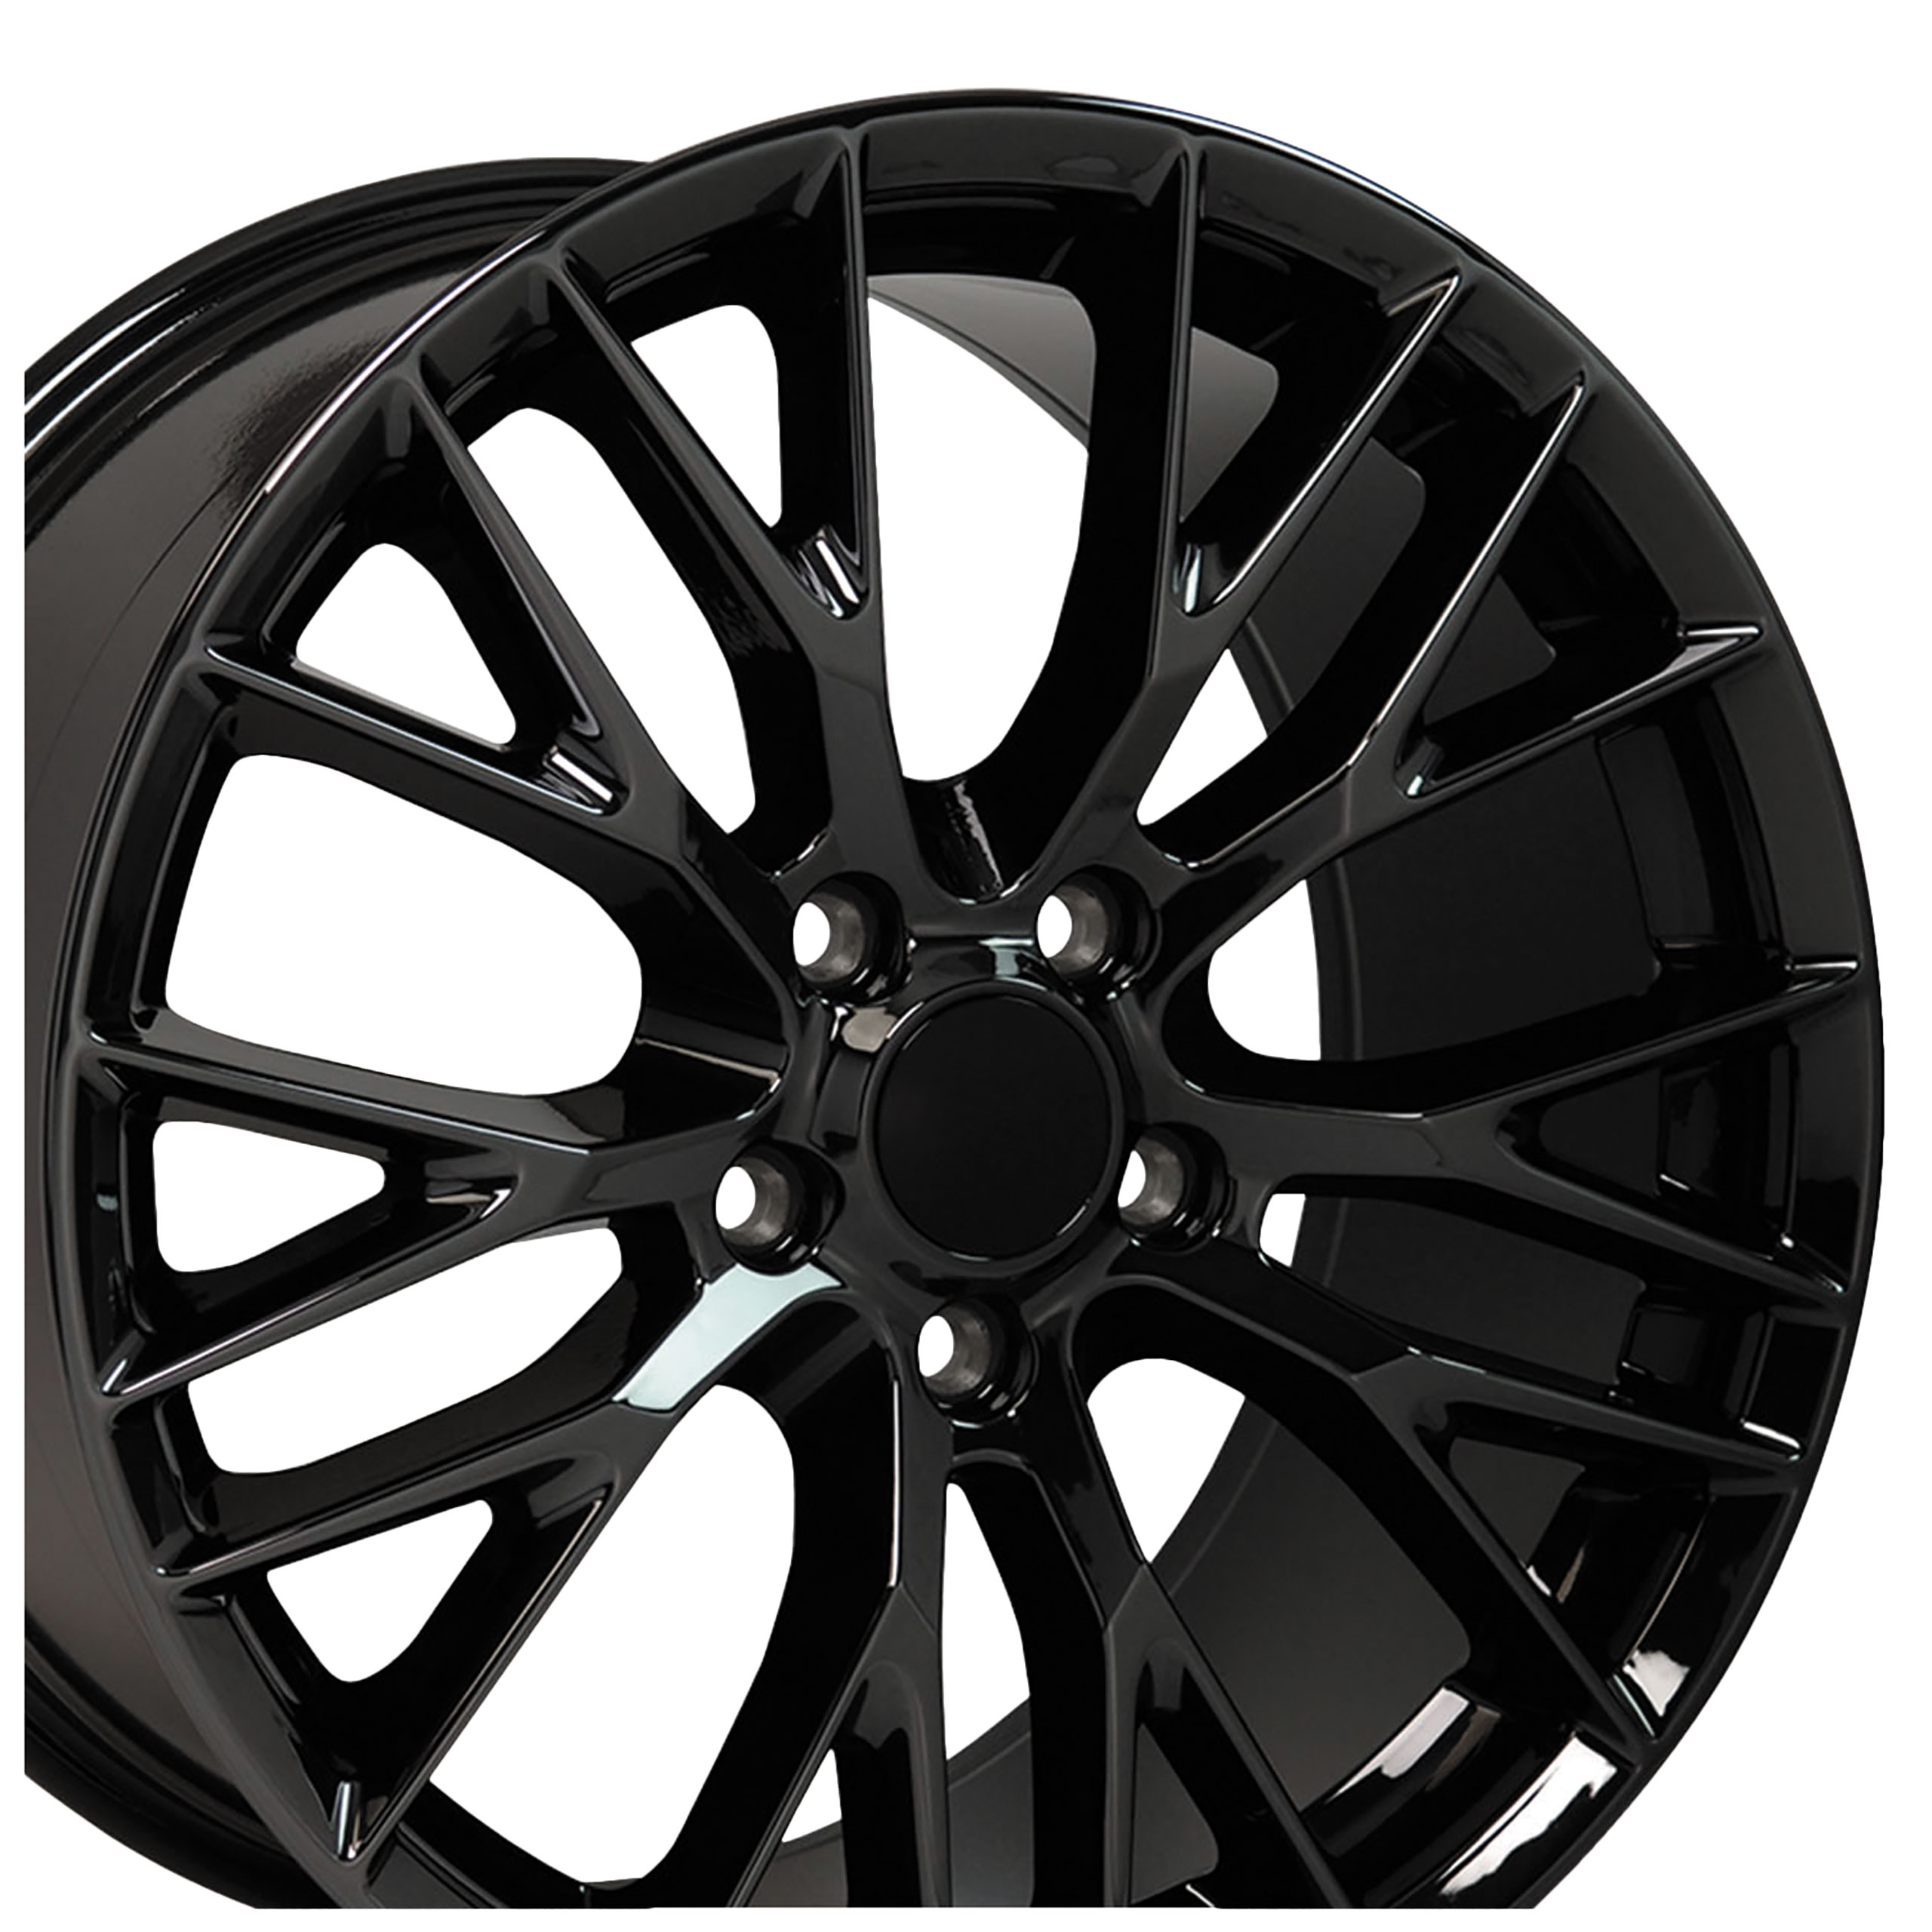 C7 Z06 Style Gloss Black Wheel 20x12 59mm Offset For 2006-2019 Corvette